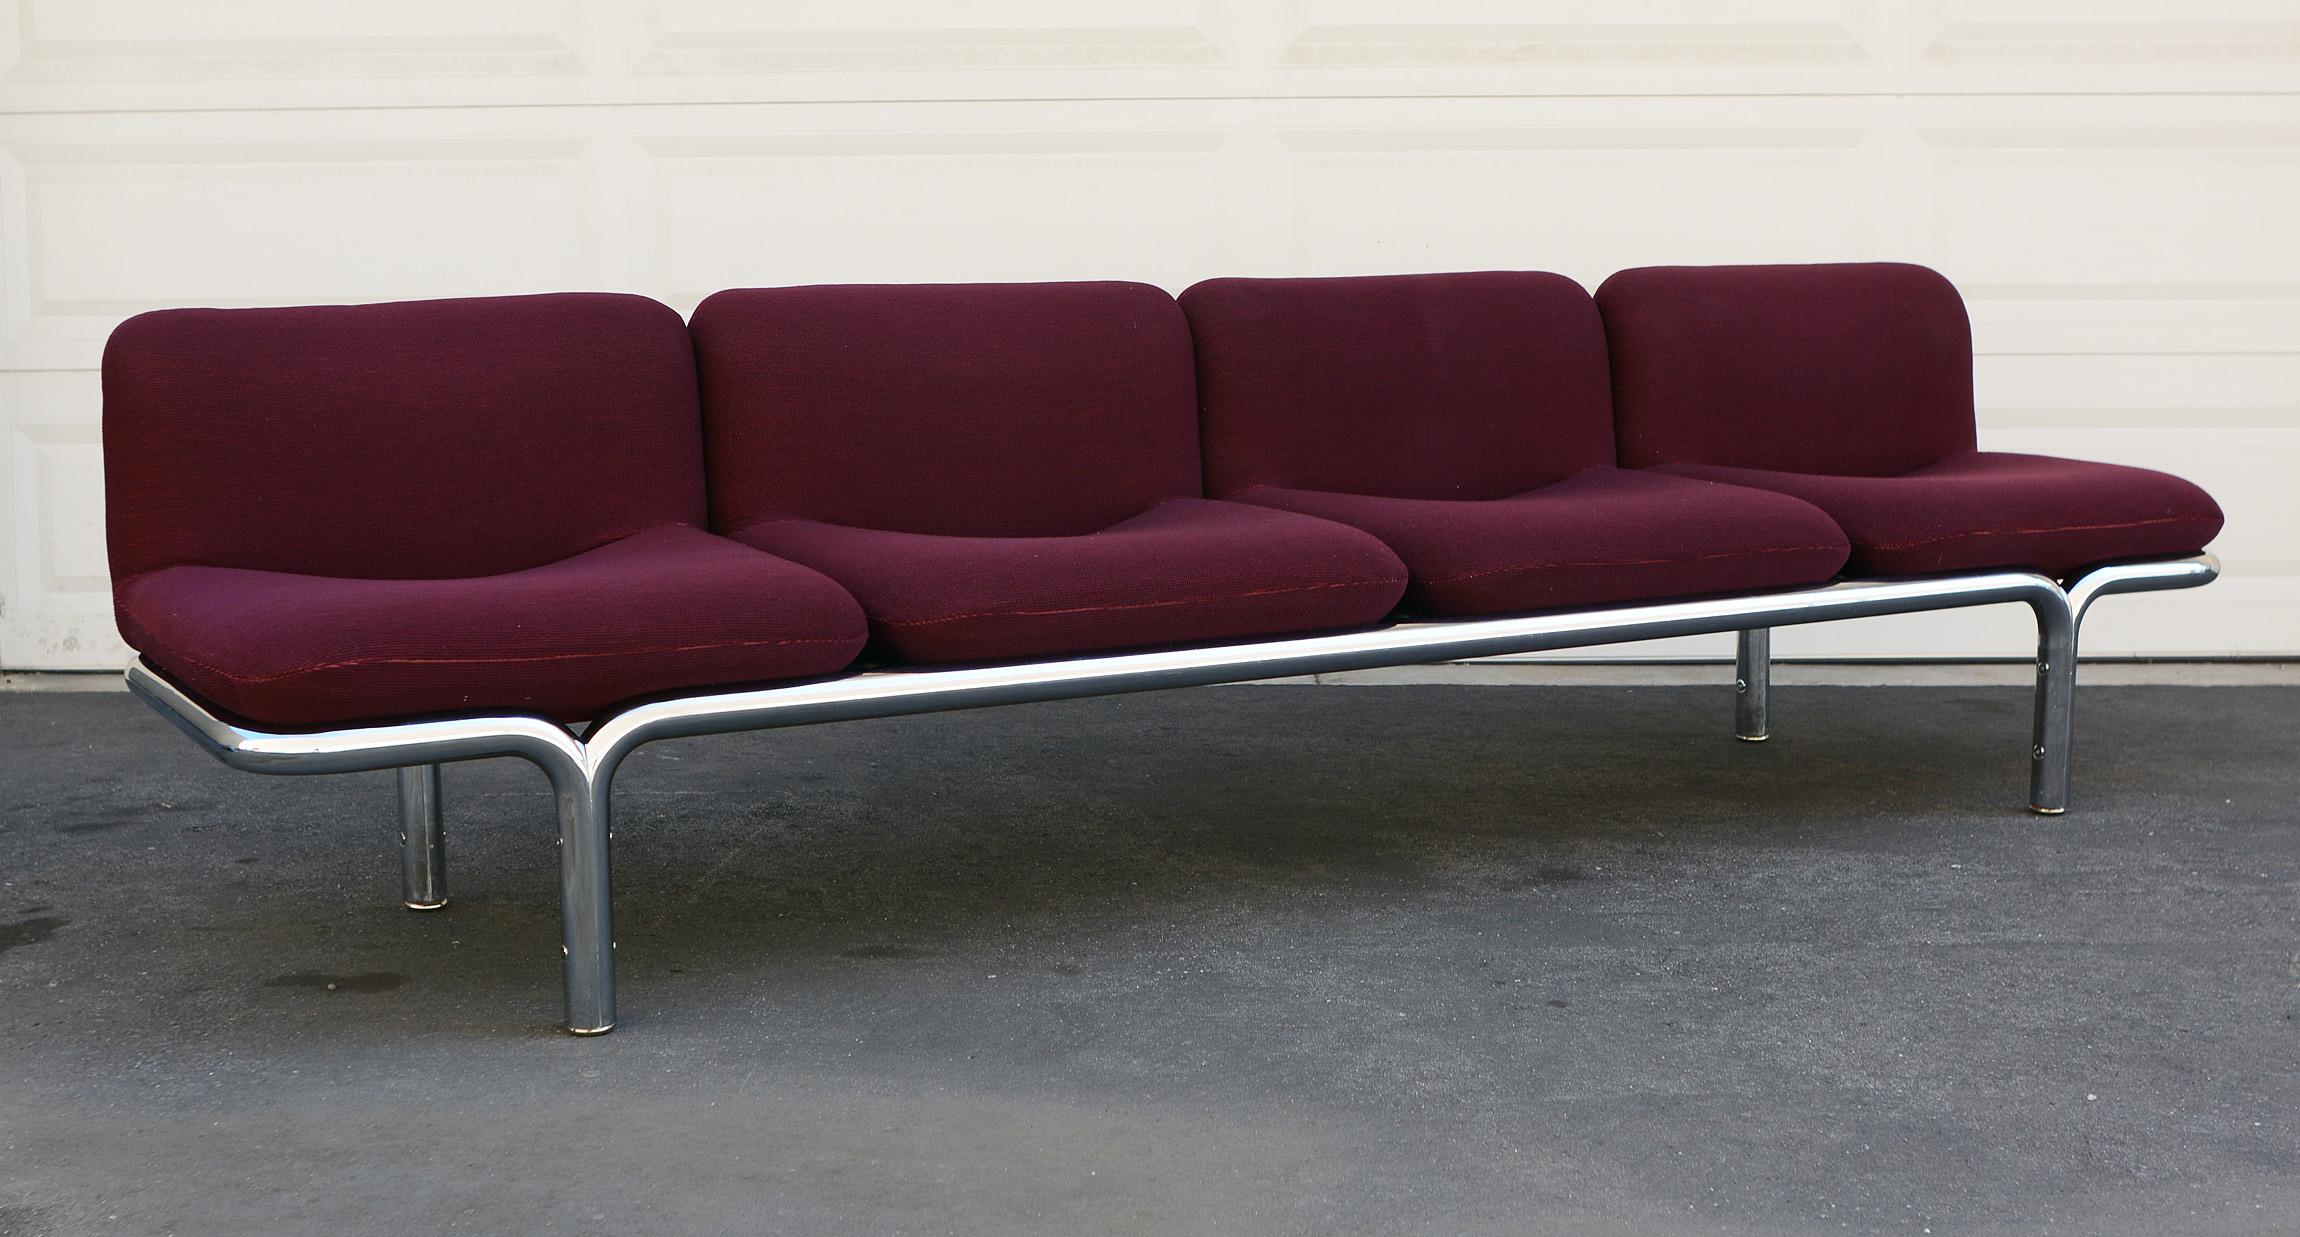 Modern Four-Seat Chrome Tubular Sofa by Brian Kane for Metropolitan